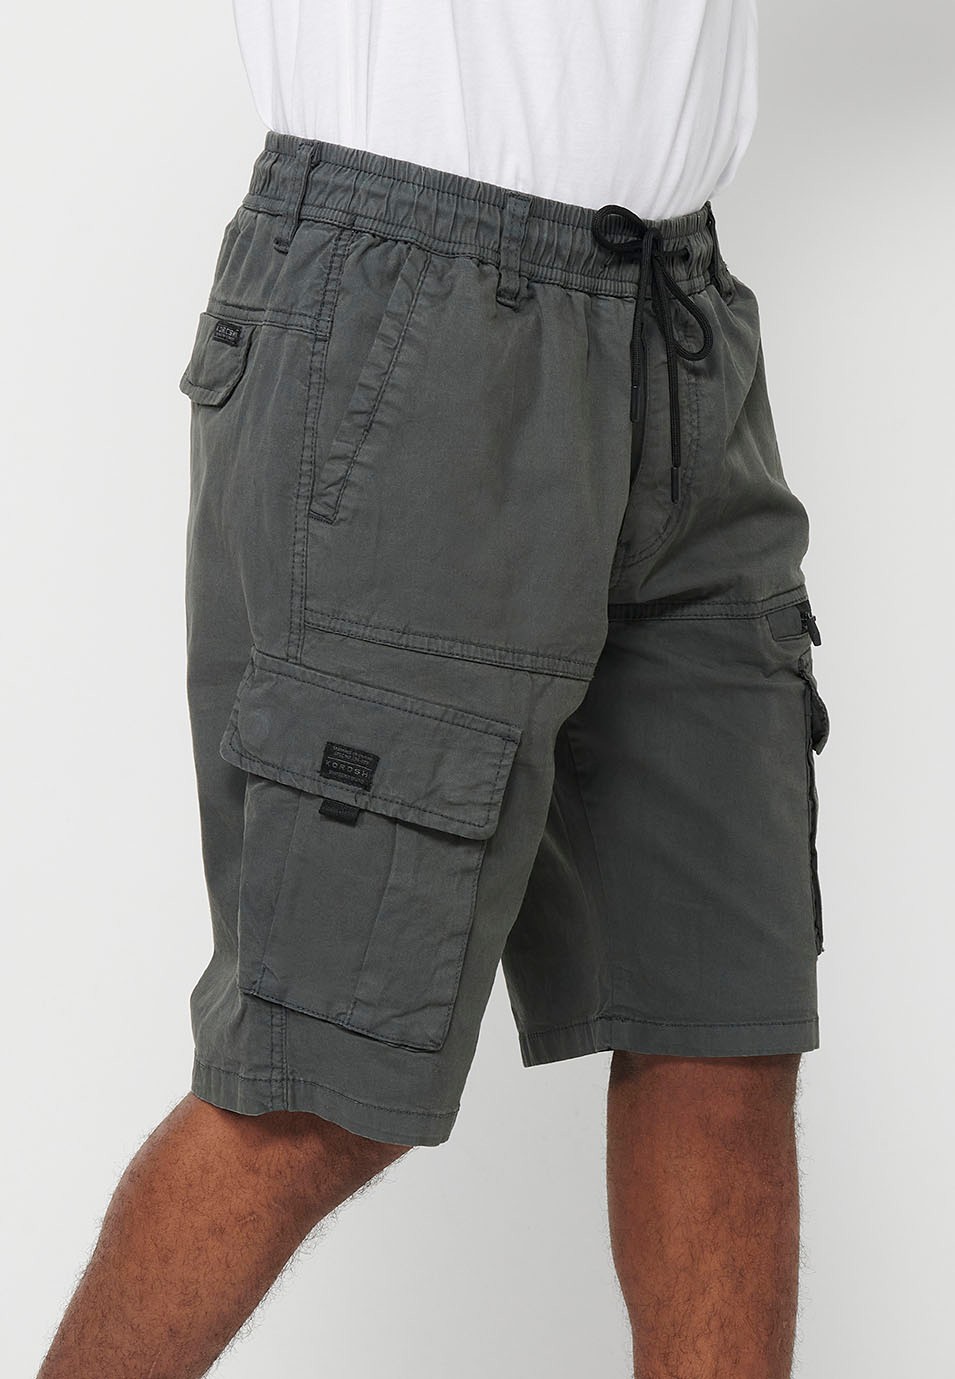 Pantalons curts càrrec amb Butxaques laterals amb solapa i Tancament davanter amb cremallera i botó Color Gris per a Home 3